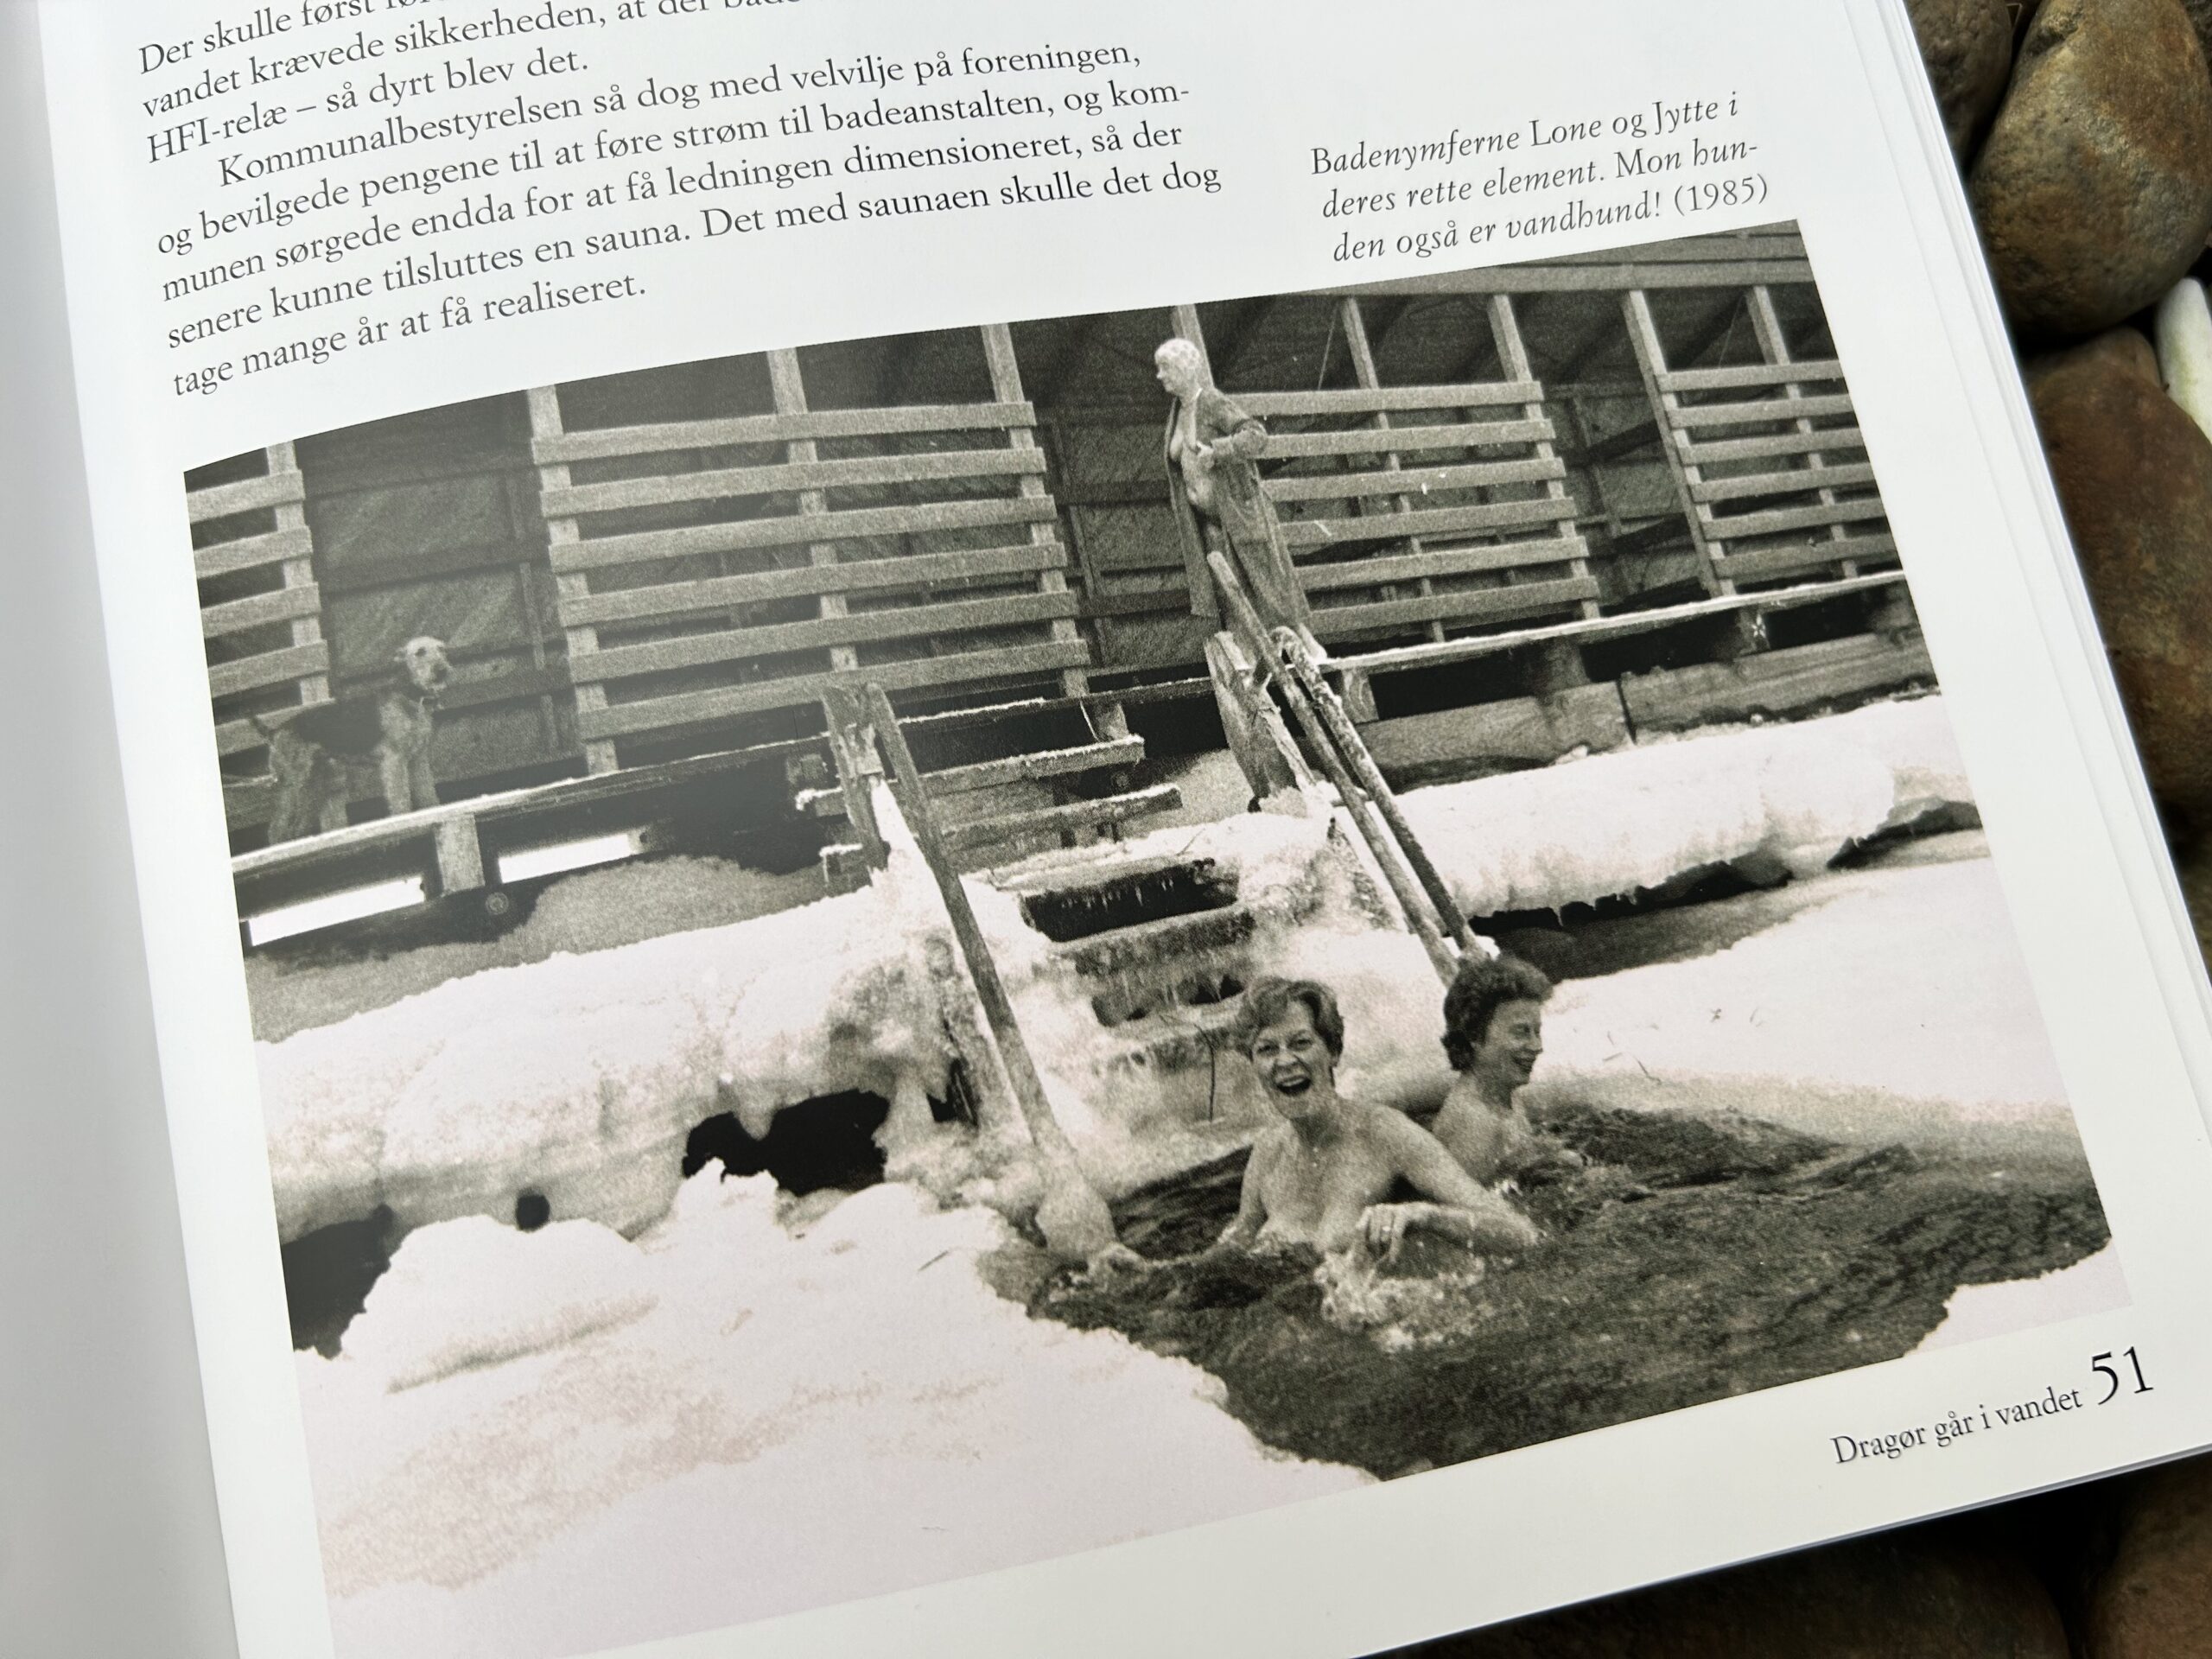 Badenymferne Lone og Jytte i deres rette element. Mon hunden også er vandhund! (1985). Foto fra bogen "Dragør går i vandet".